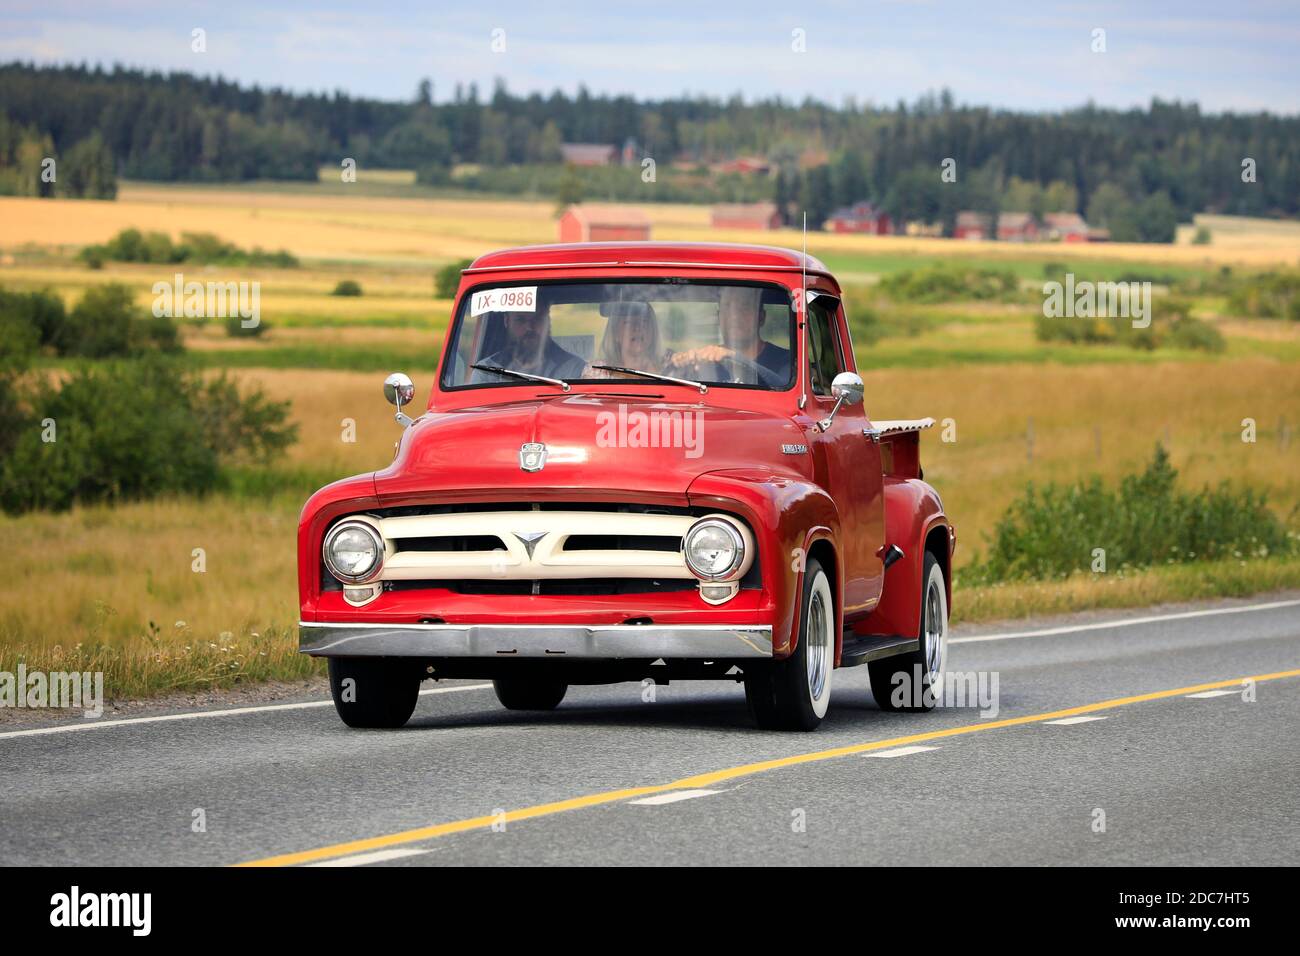 Conduite du camion rouge Ford F100, du début au milieu des années 1950, croisière Maisemaruise 2019. Vaulammi, Finlande. 3 août 2019. Banque D'Images